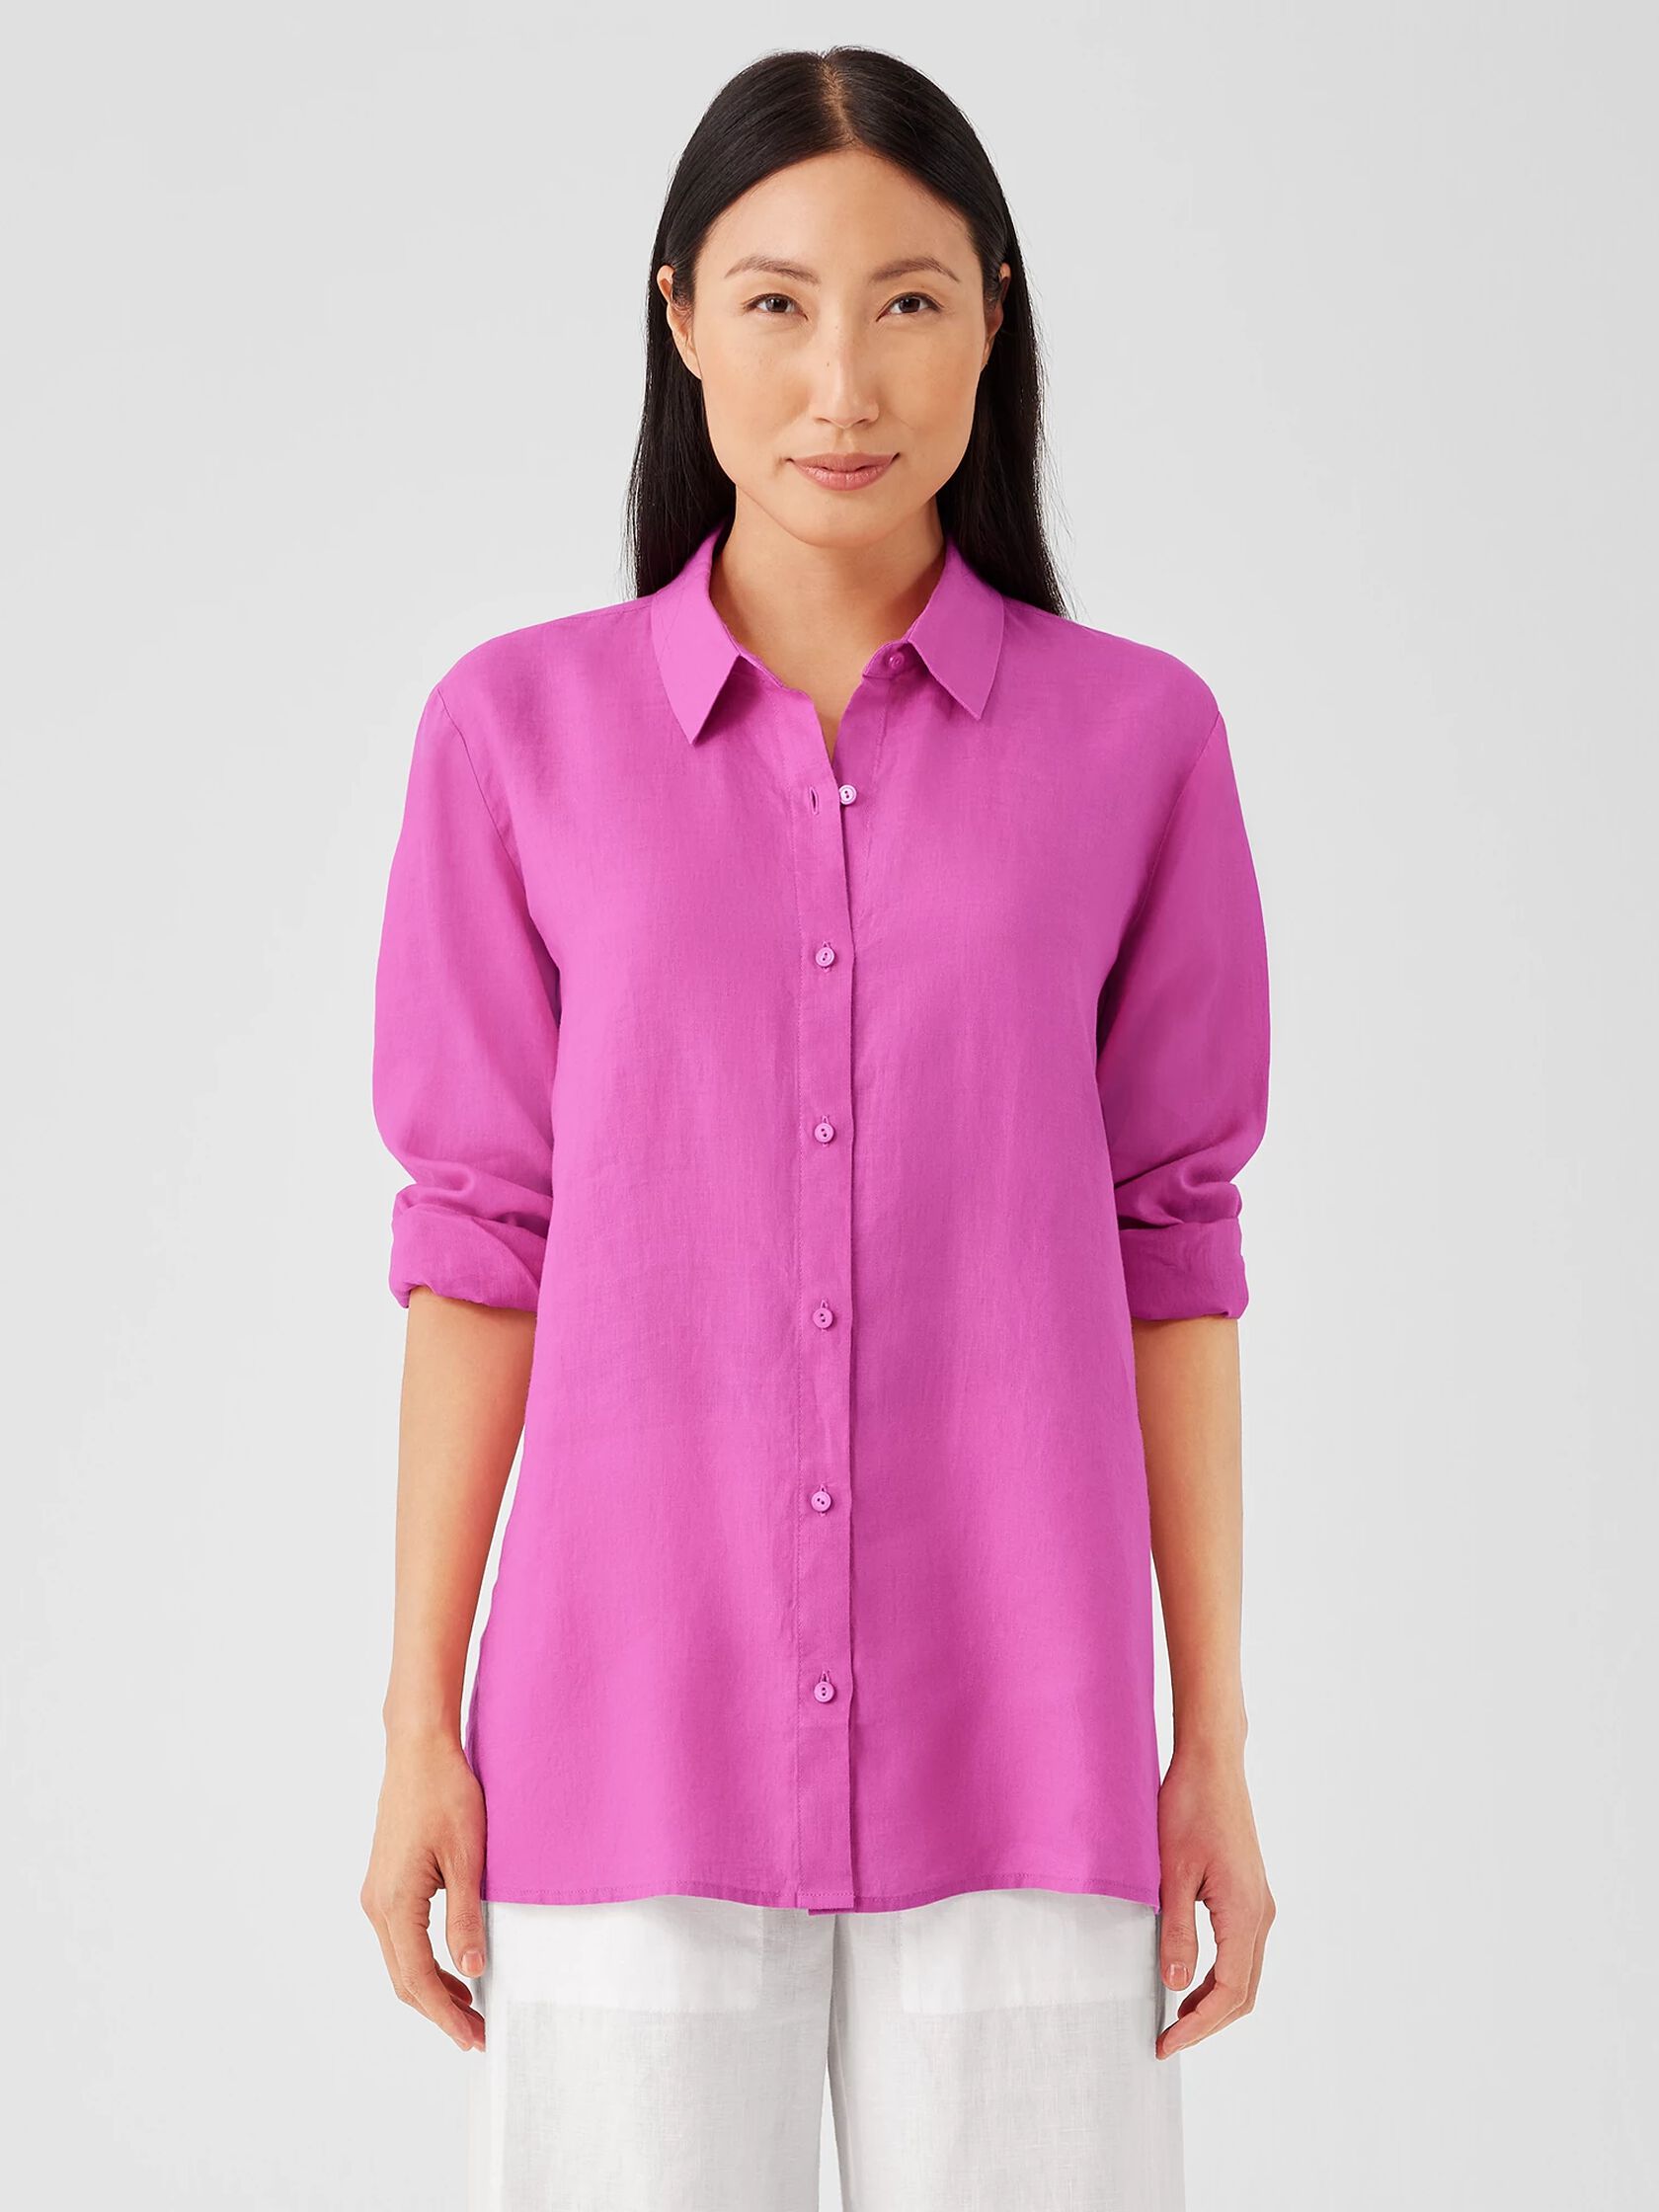 Organic Handkerchief Linen Classic Collar Shirt | Eileen Fisher